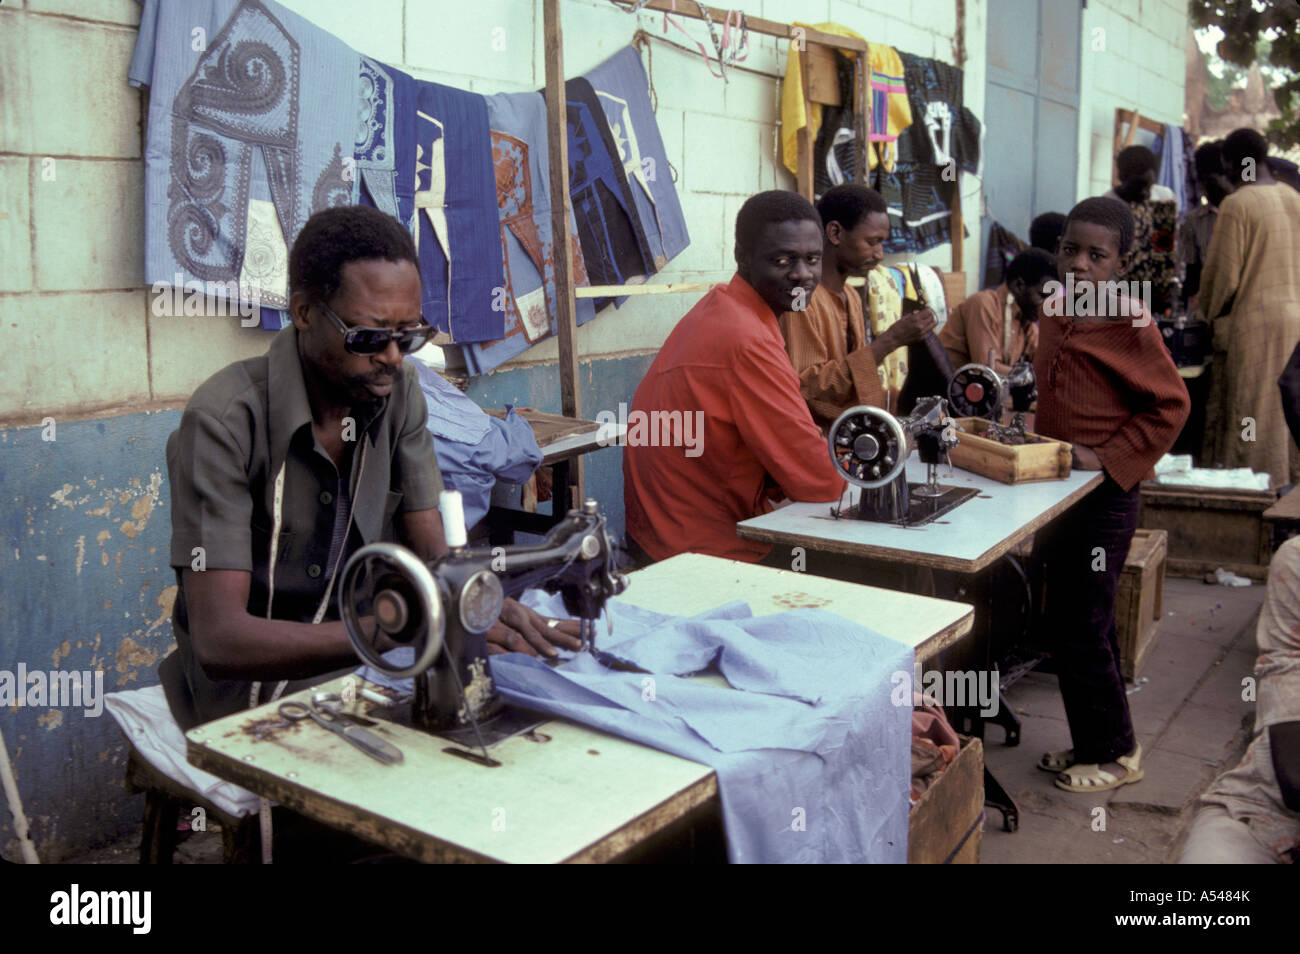 Painet hn1709 3092 mali sarti gli uomini lavorano a Bamako paese nazione in via di sviluppo meno sviluppati economicamente emergenti della cultura Foto Stock